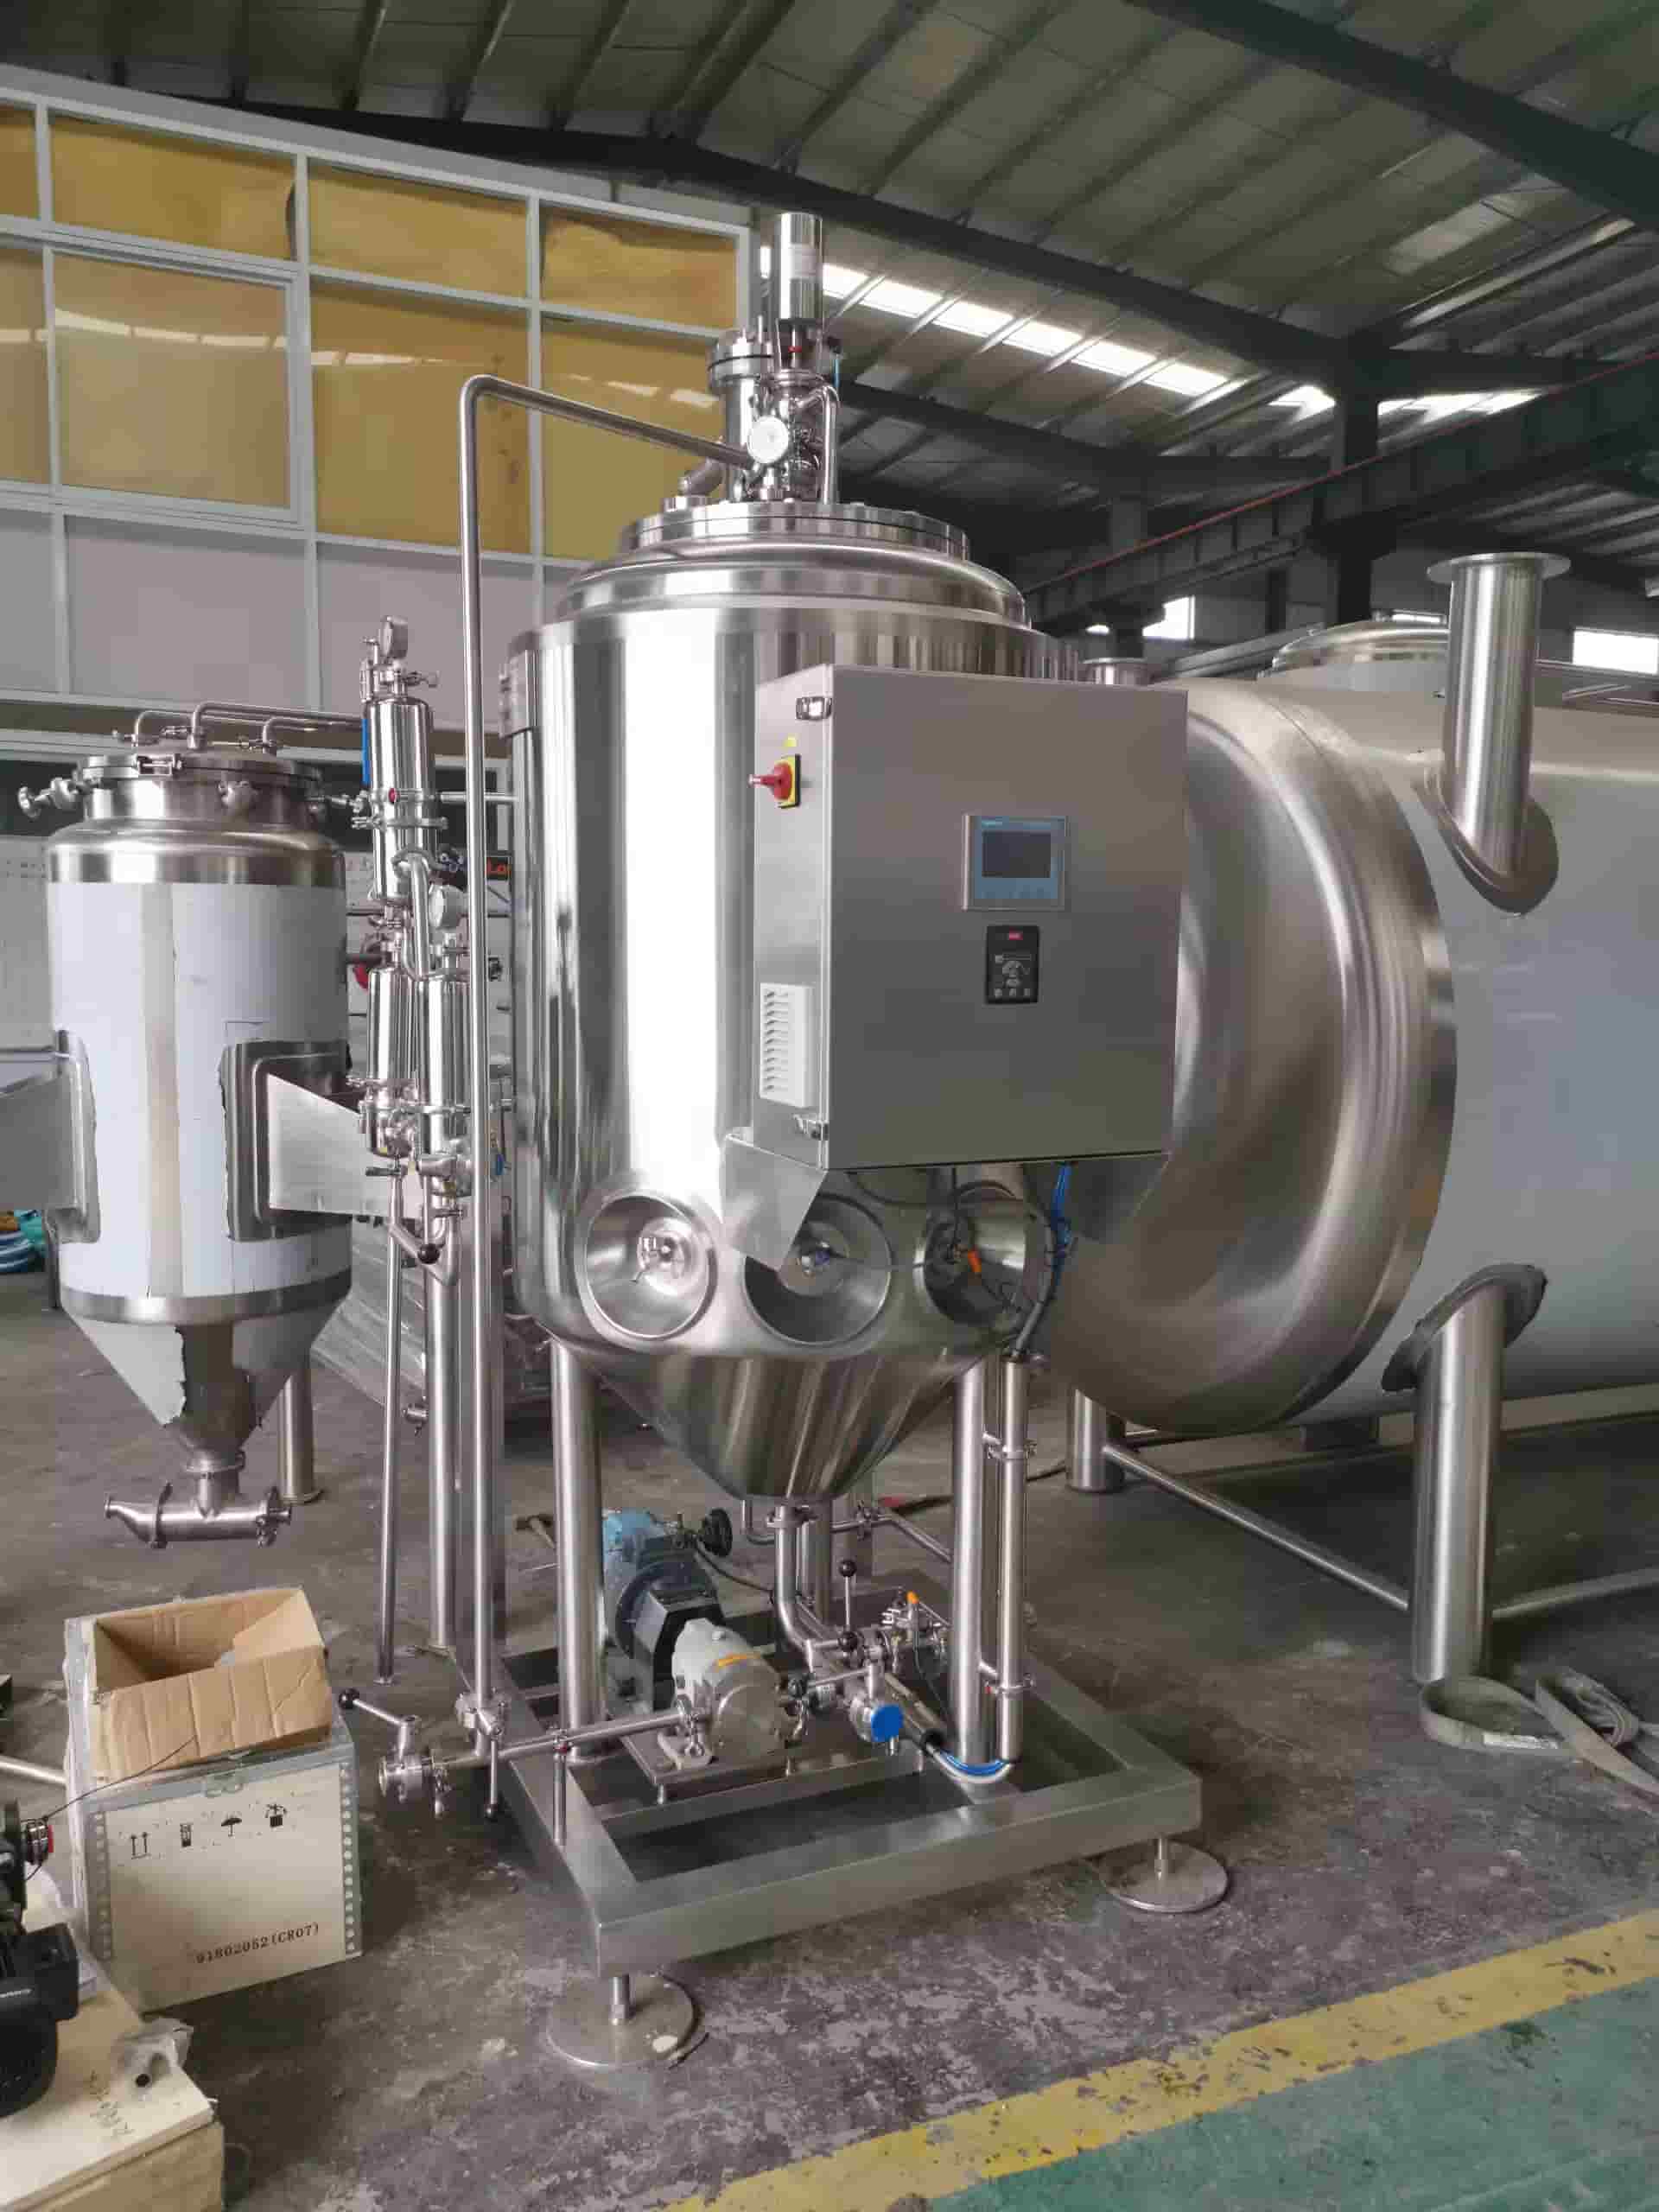 yeast propagation tank